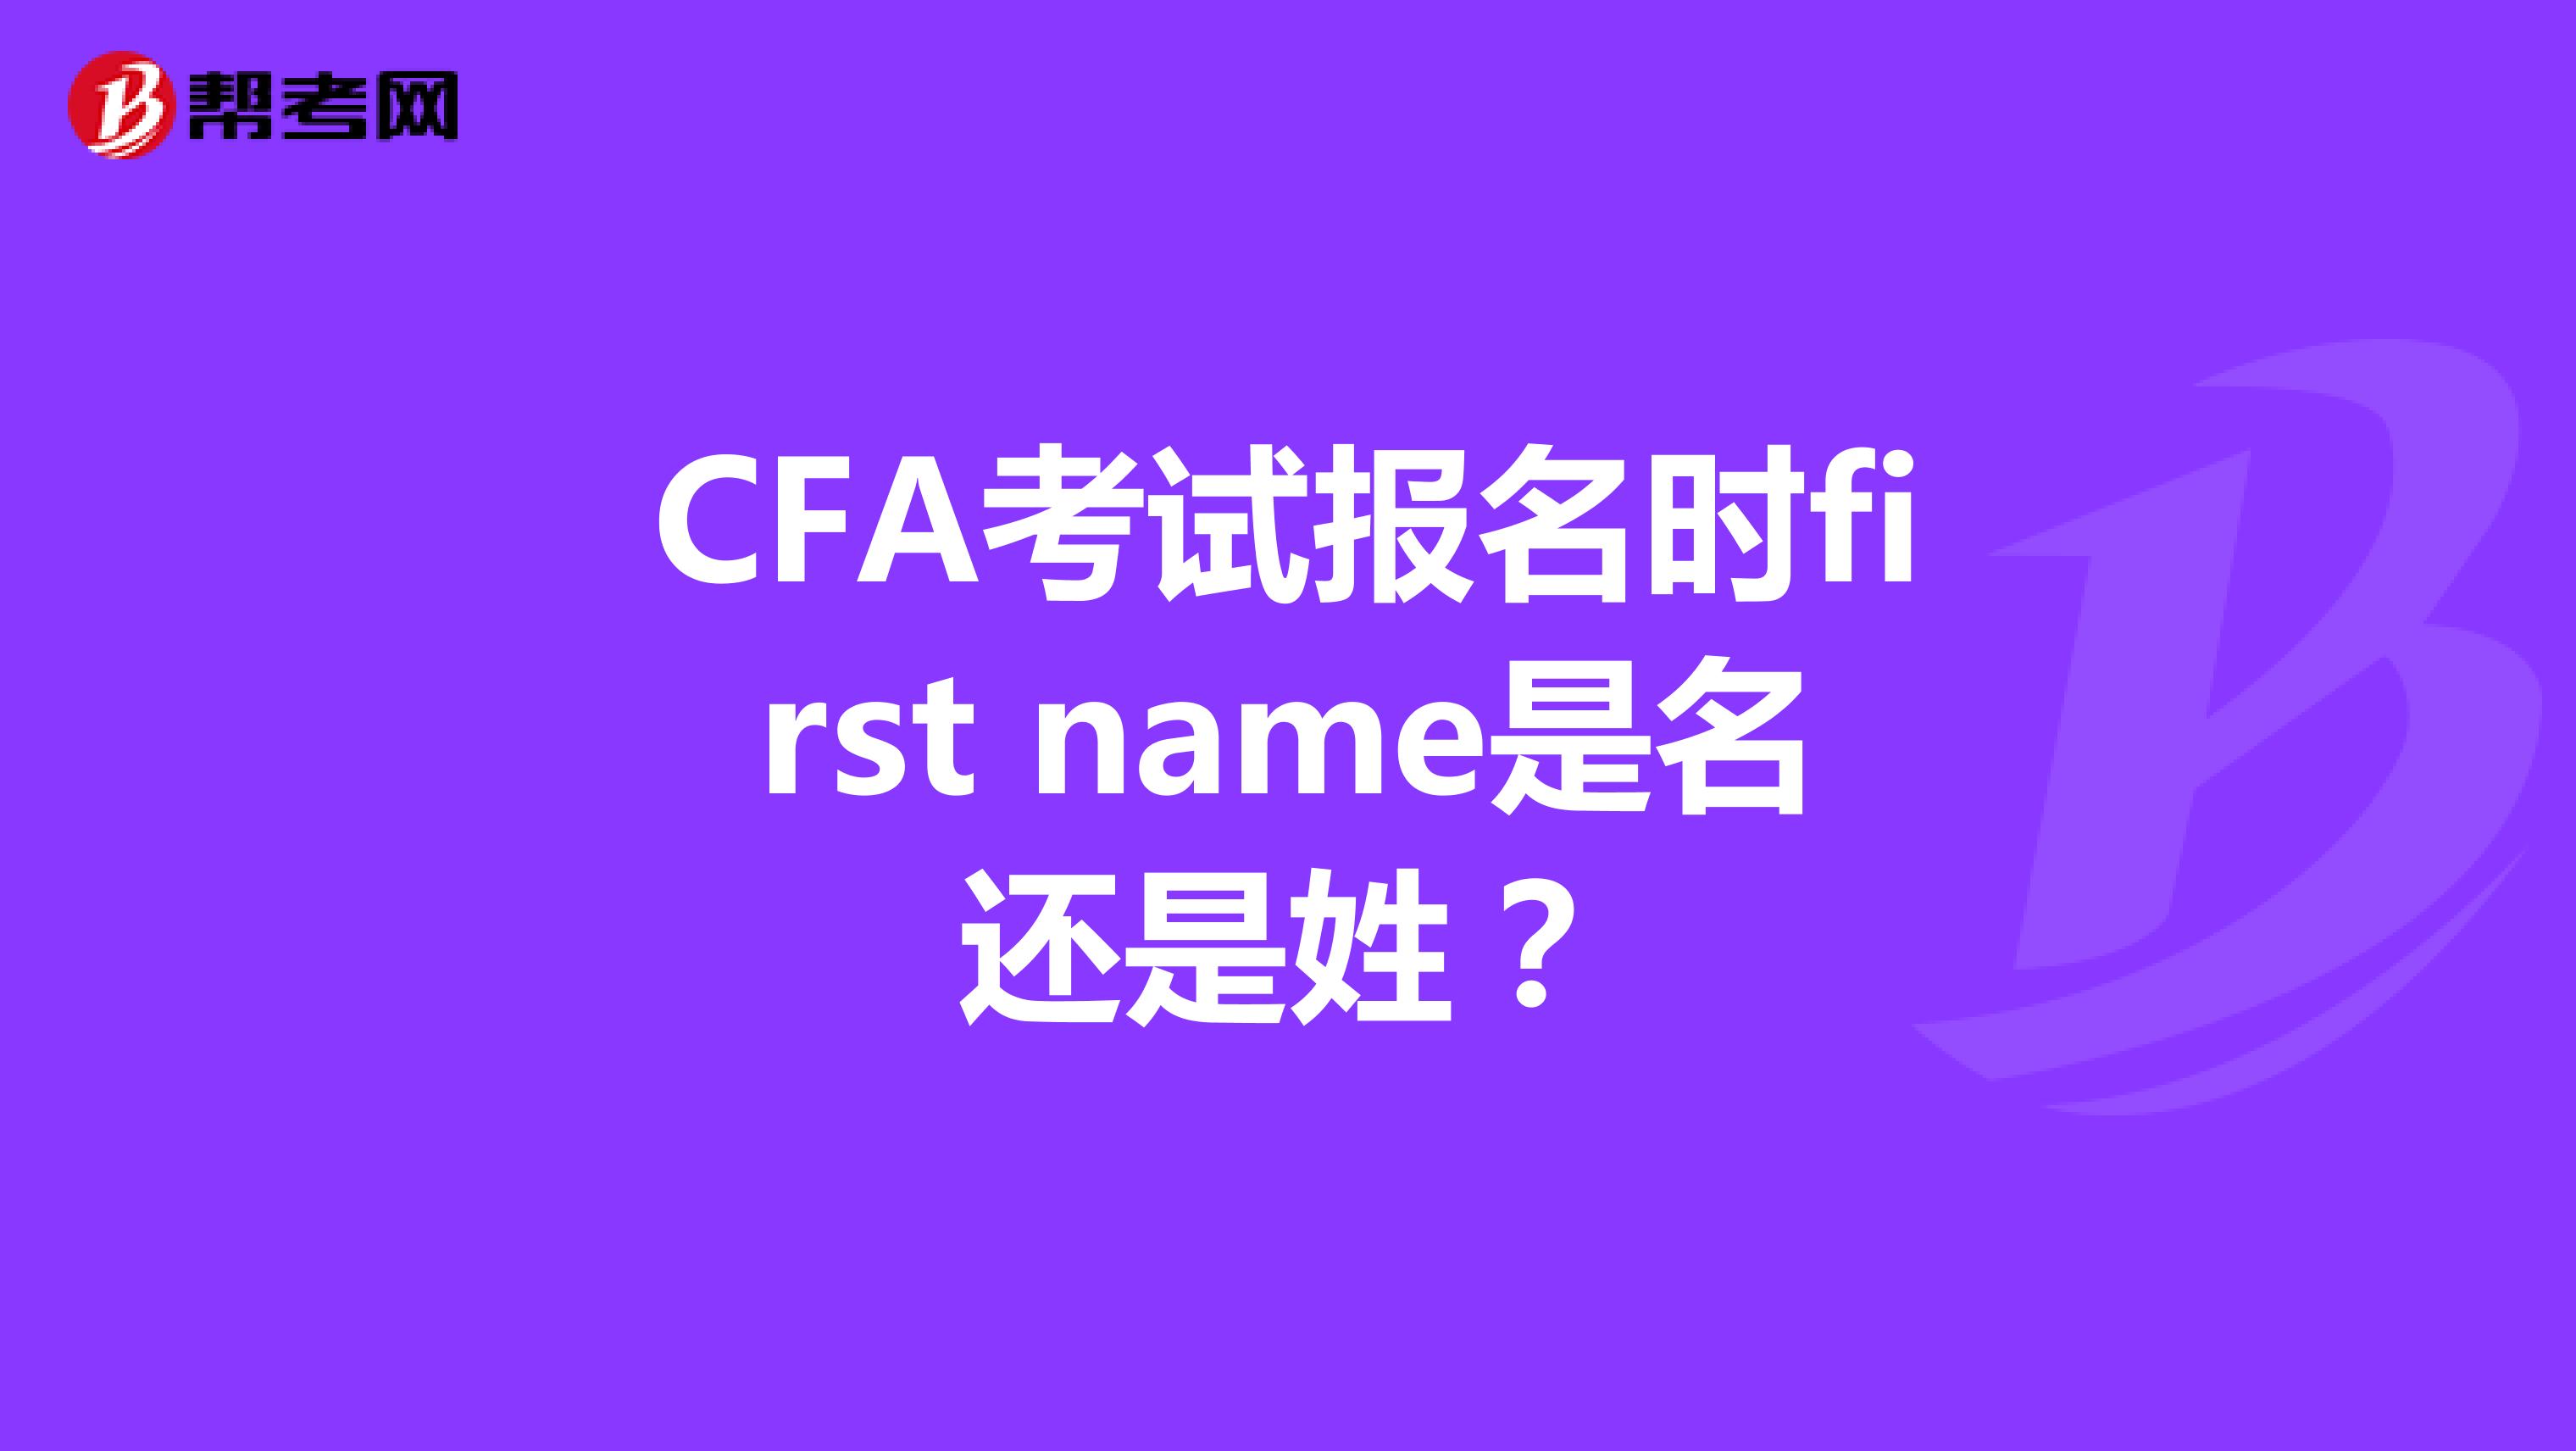 CFA考试报名时first name是名还是姓？